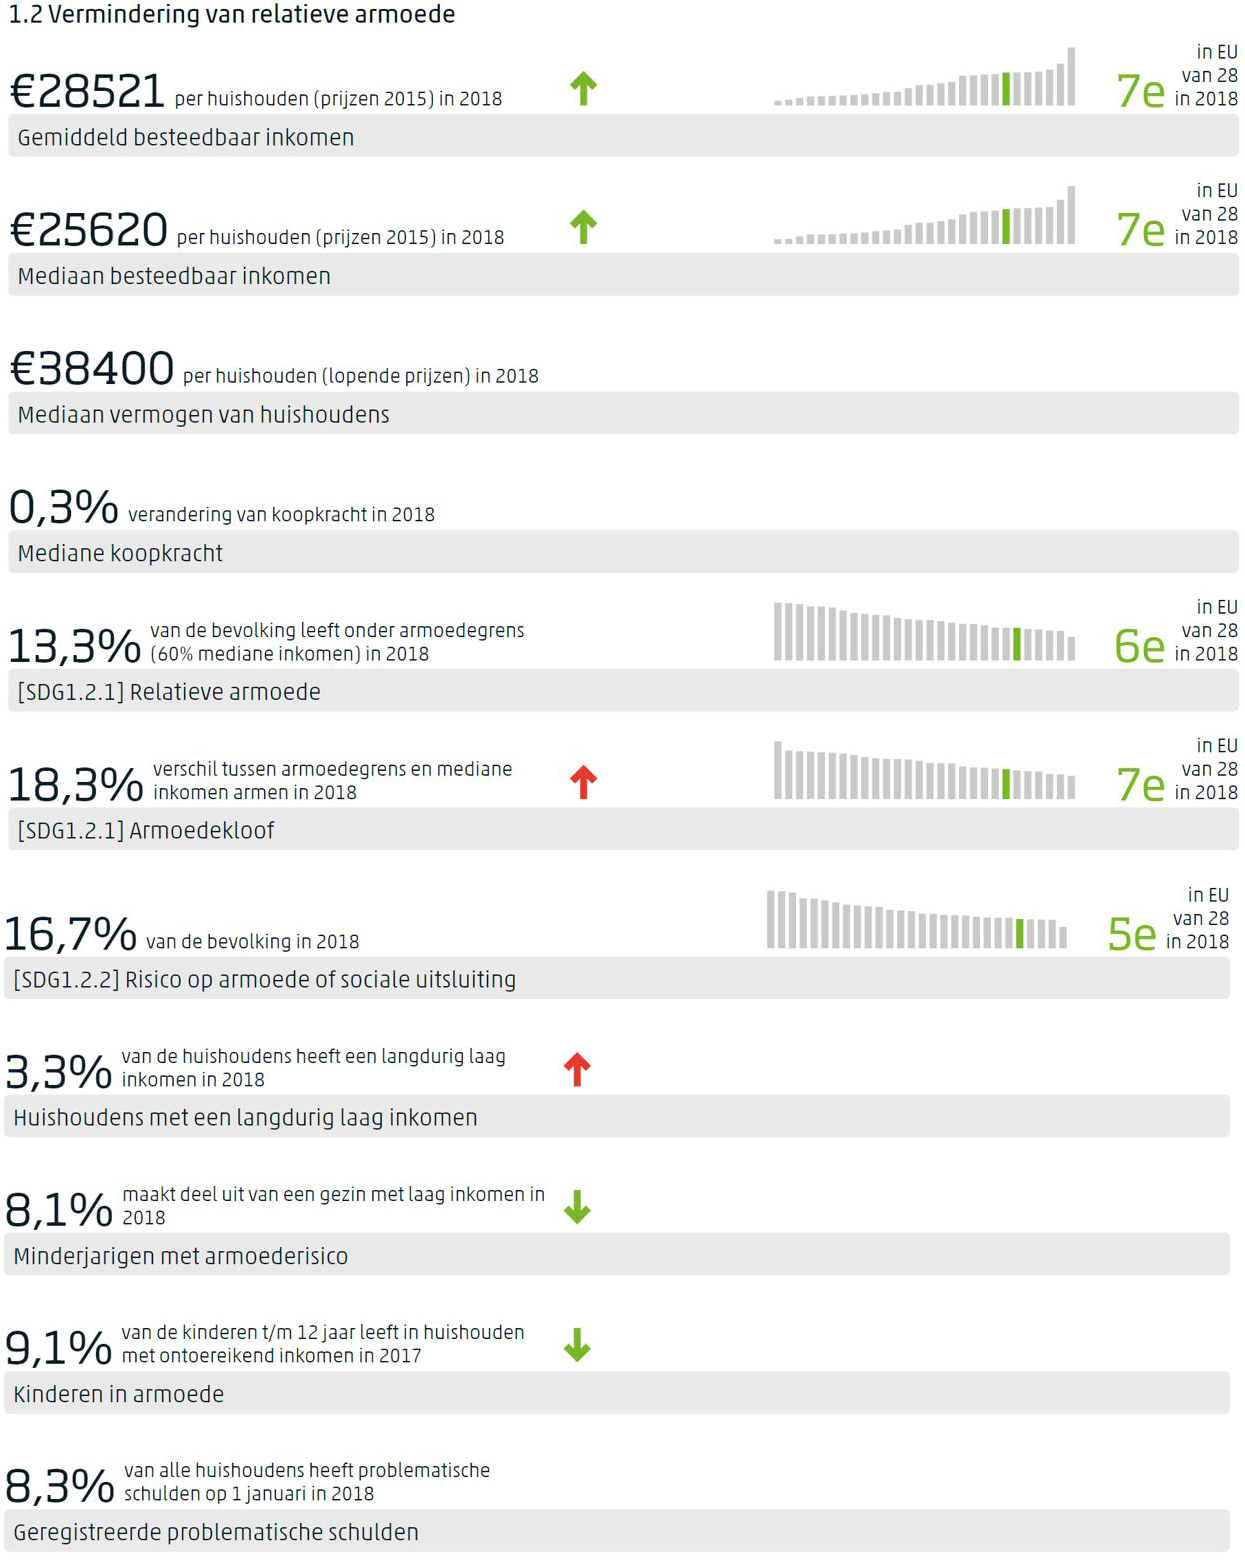 Dashboard voor SDG 1 met per indicator de meest recente waarde, de trend op middellange termijn indien gemeten, en de positie van Nederland in de EU indien waargenomen.